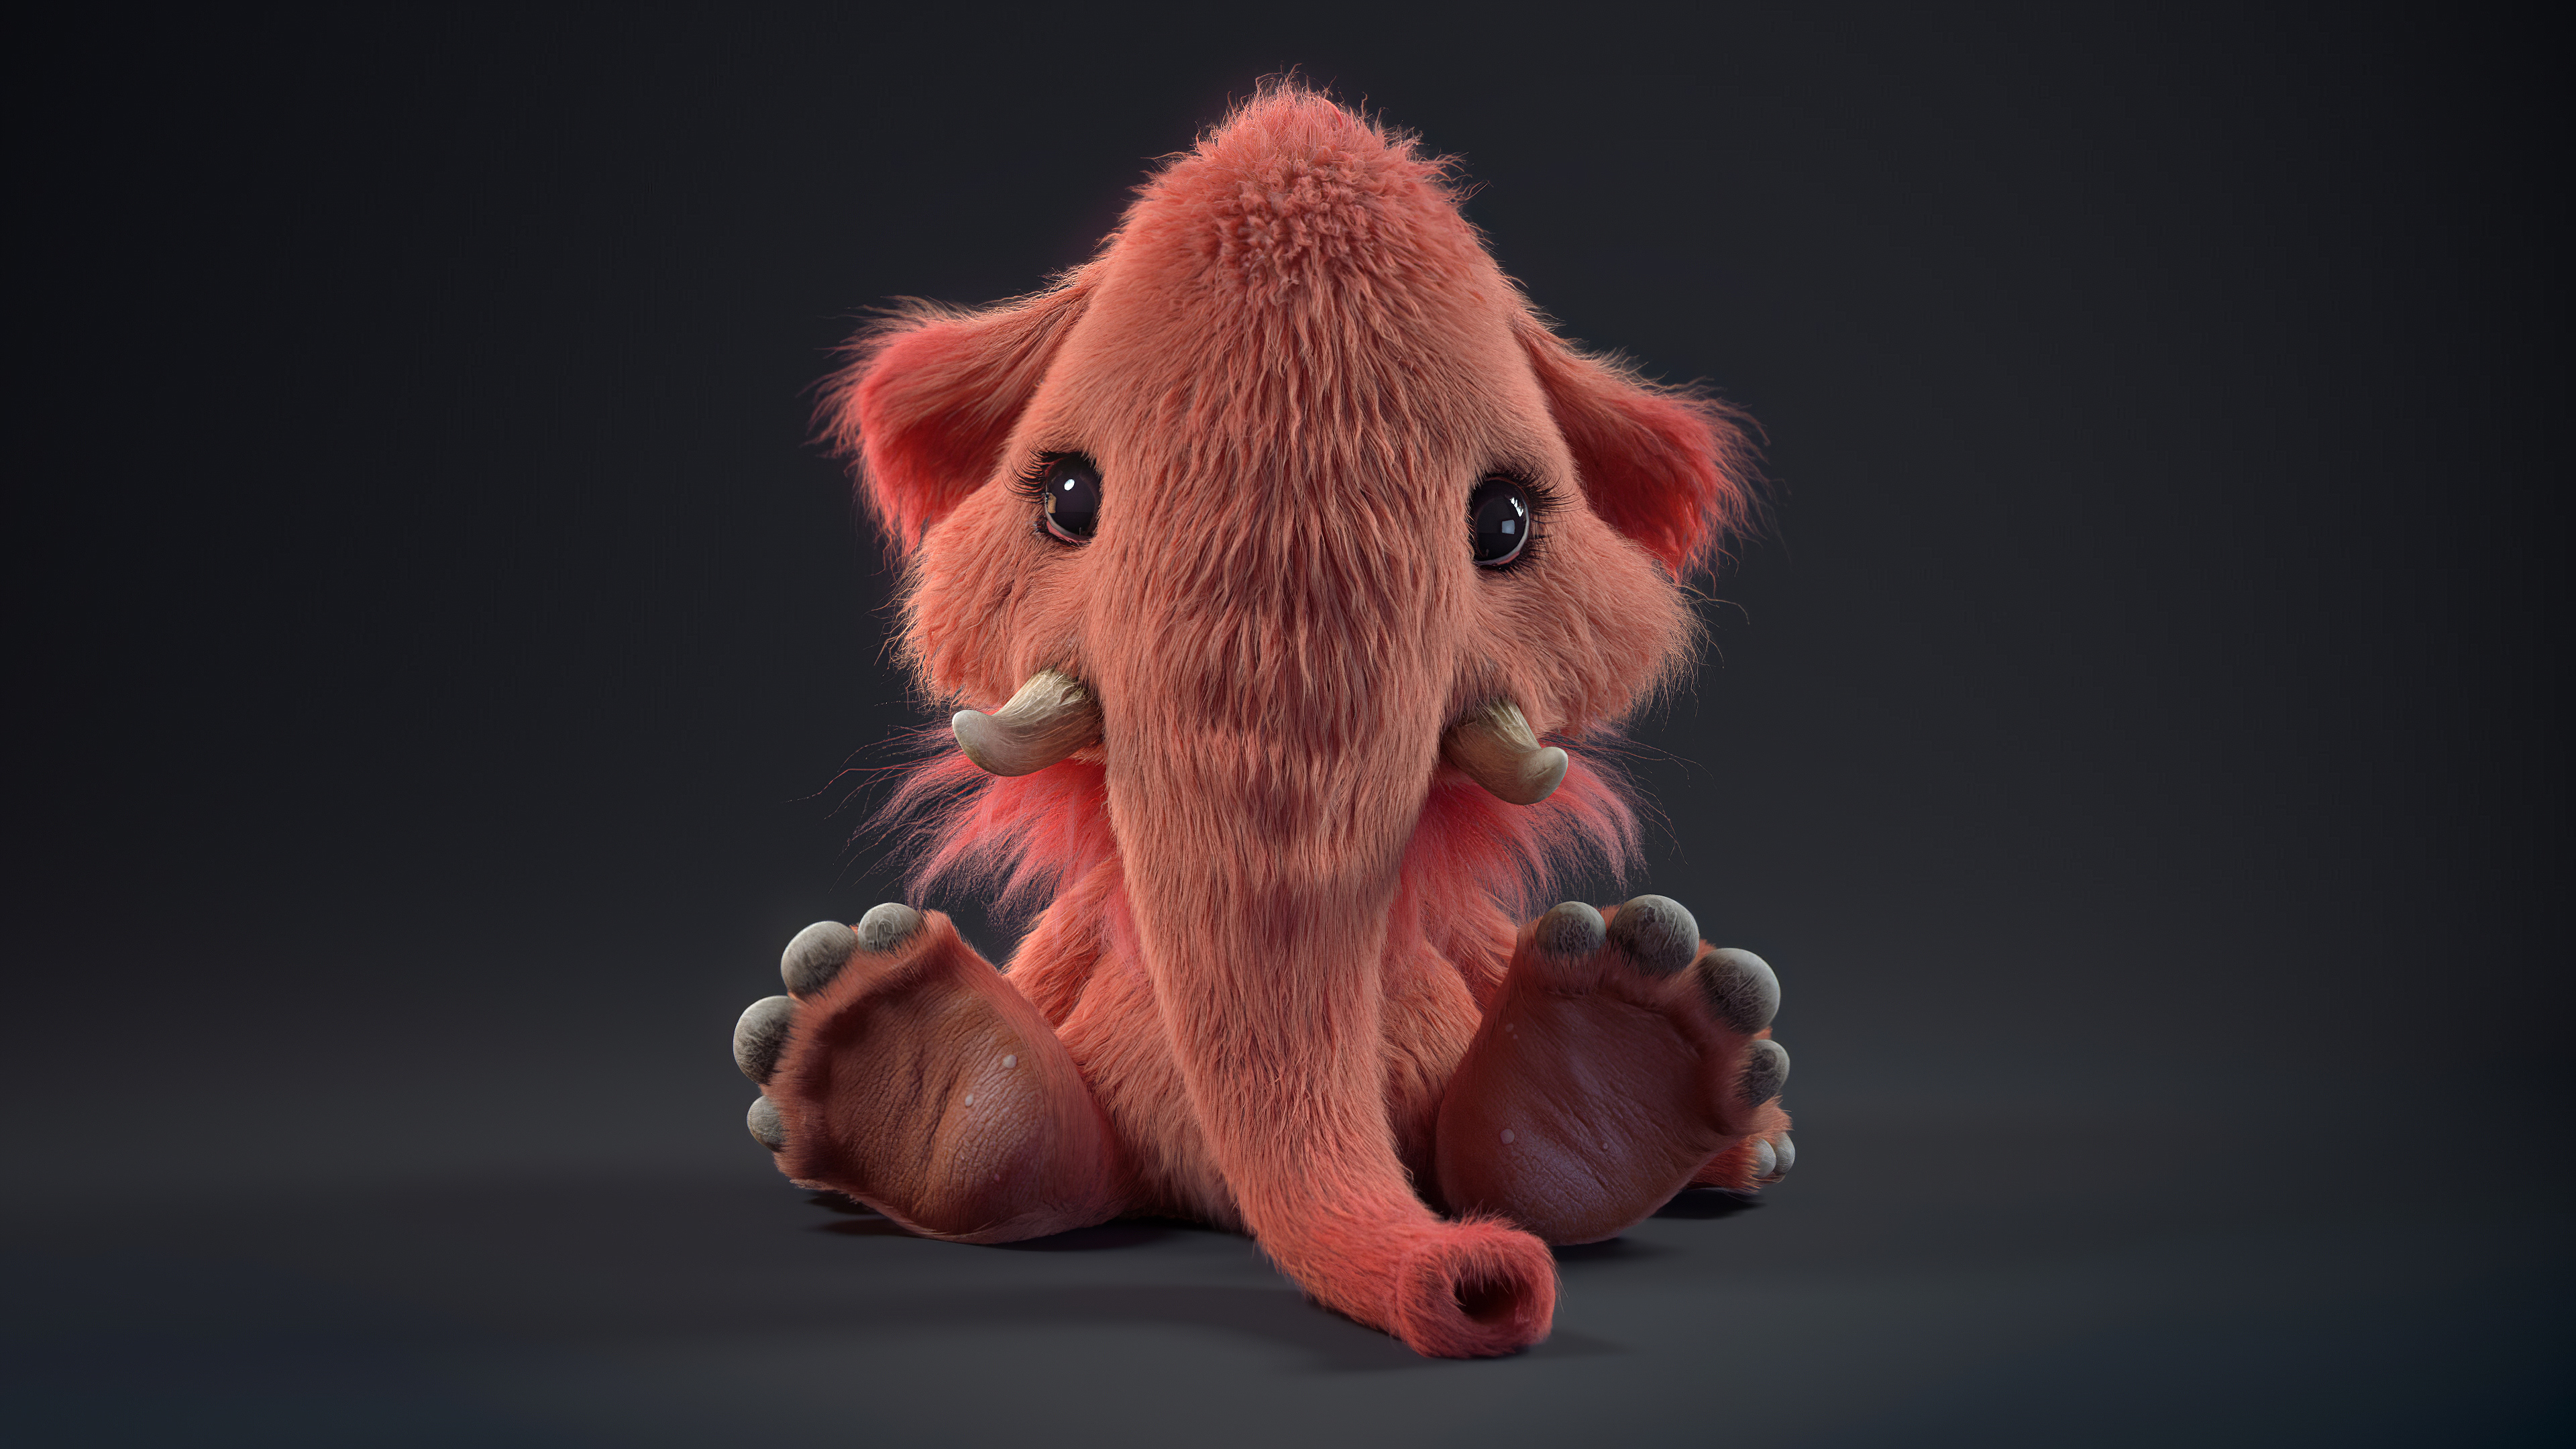 Cute Baby Mammoth by Ruslan Gatiyatov